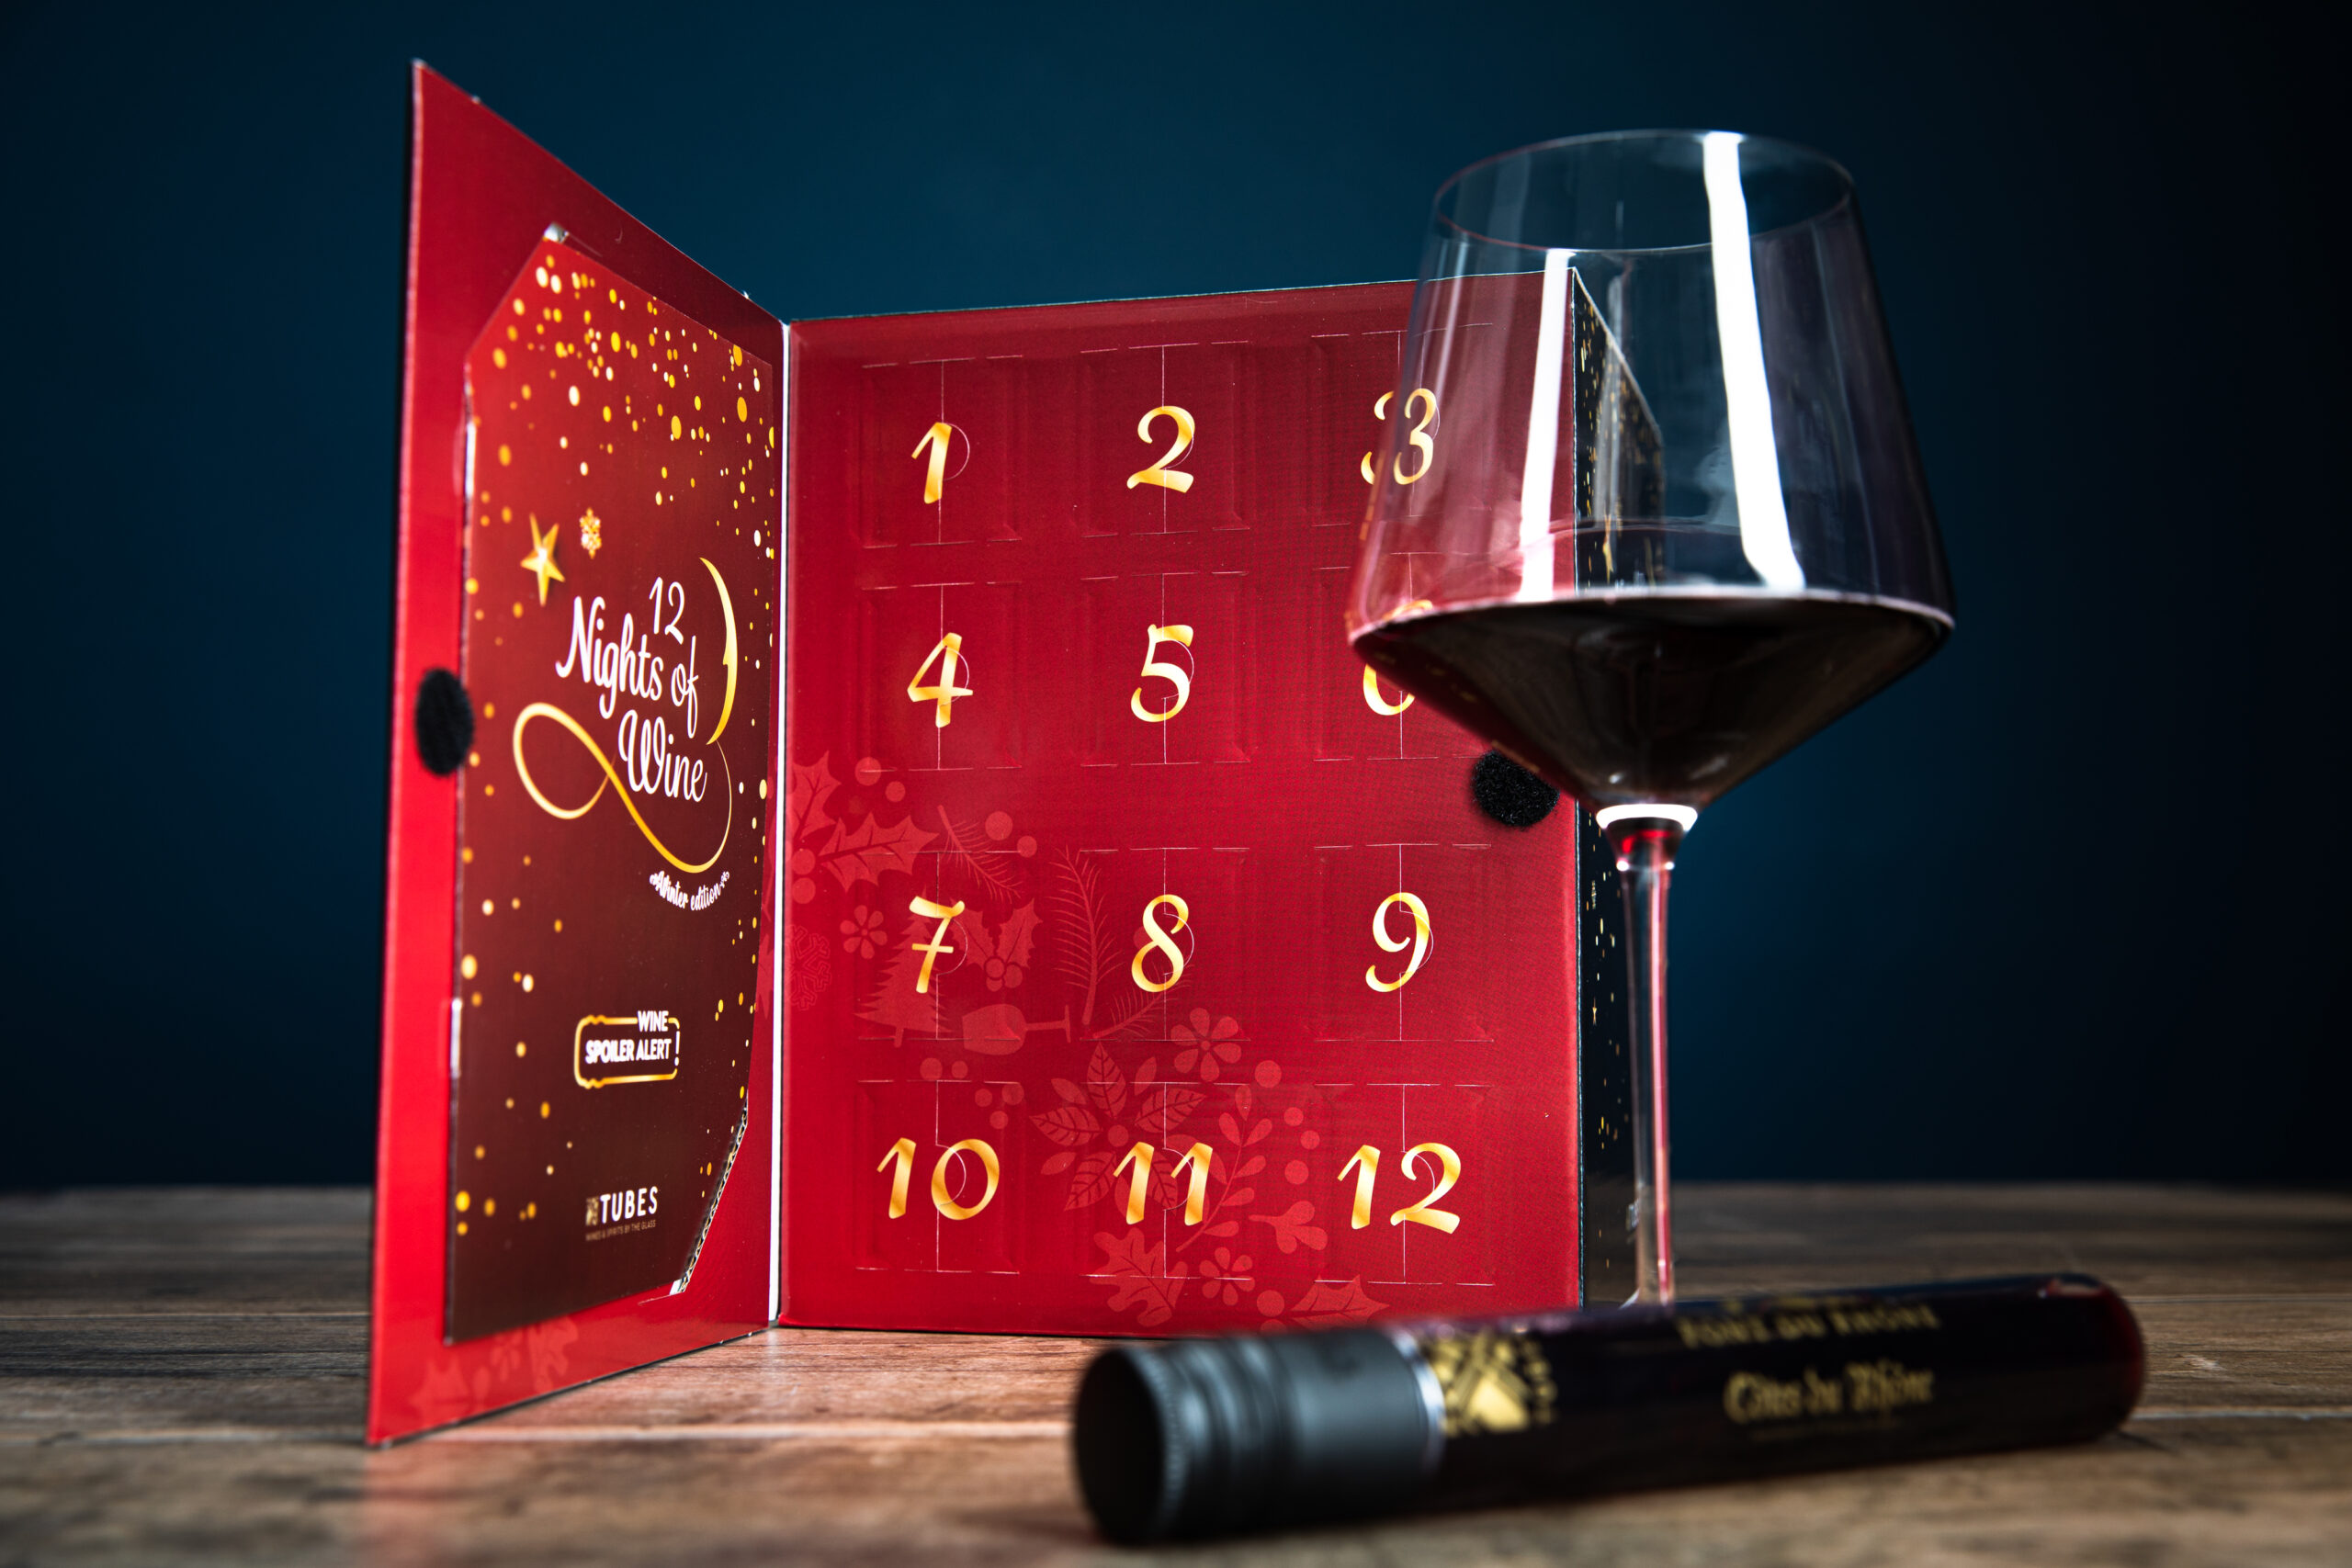 12 nights of Wine Adventskalender